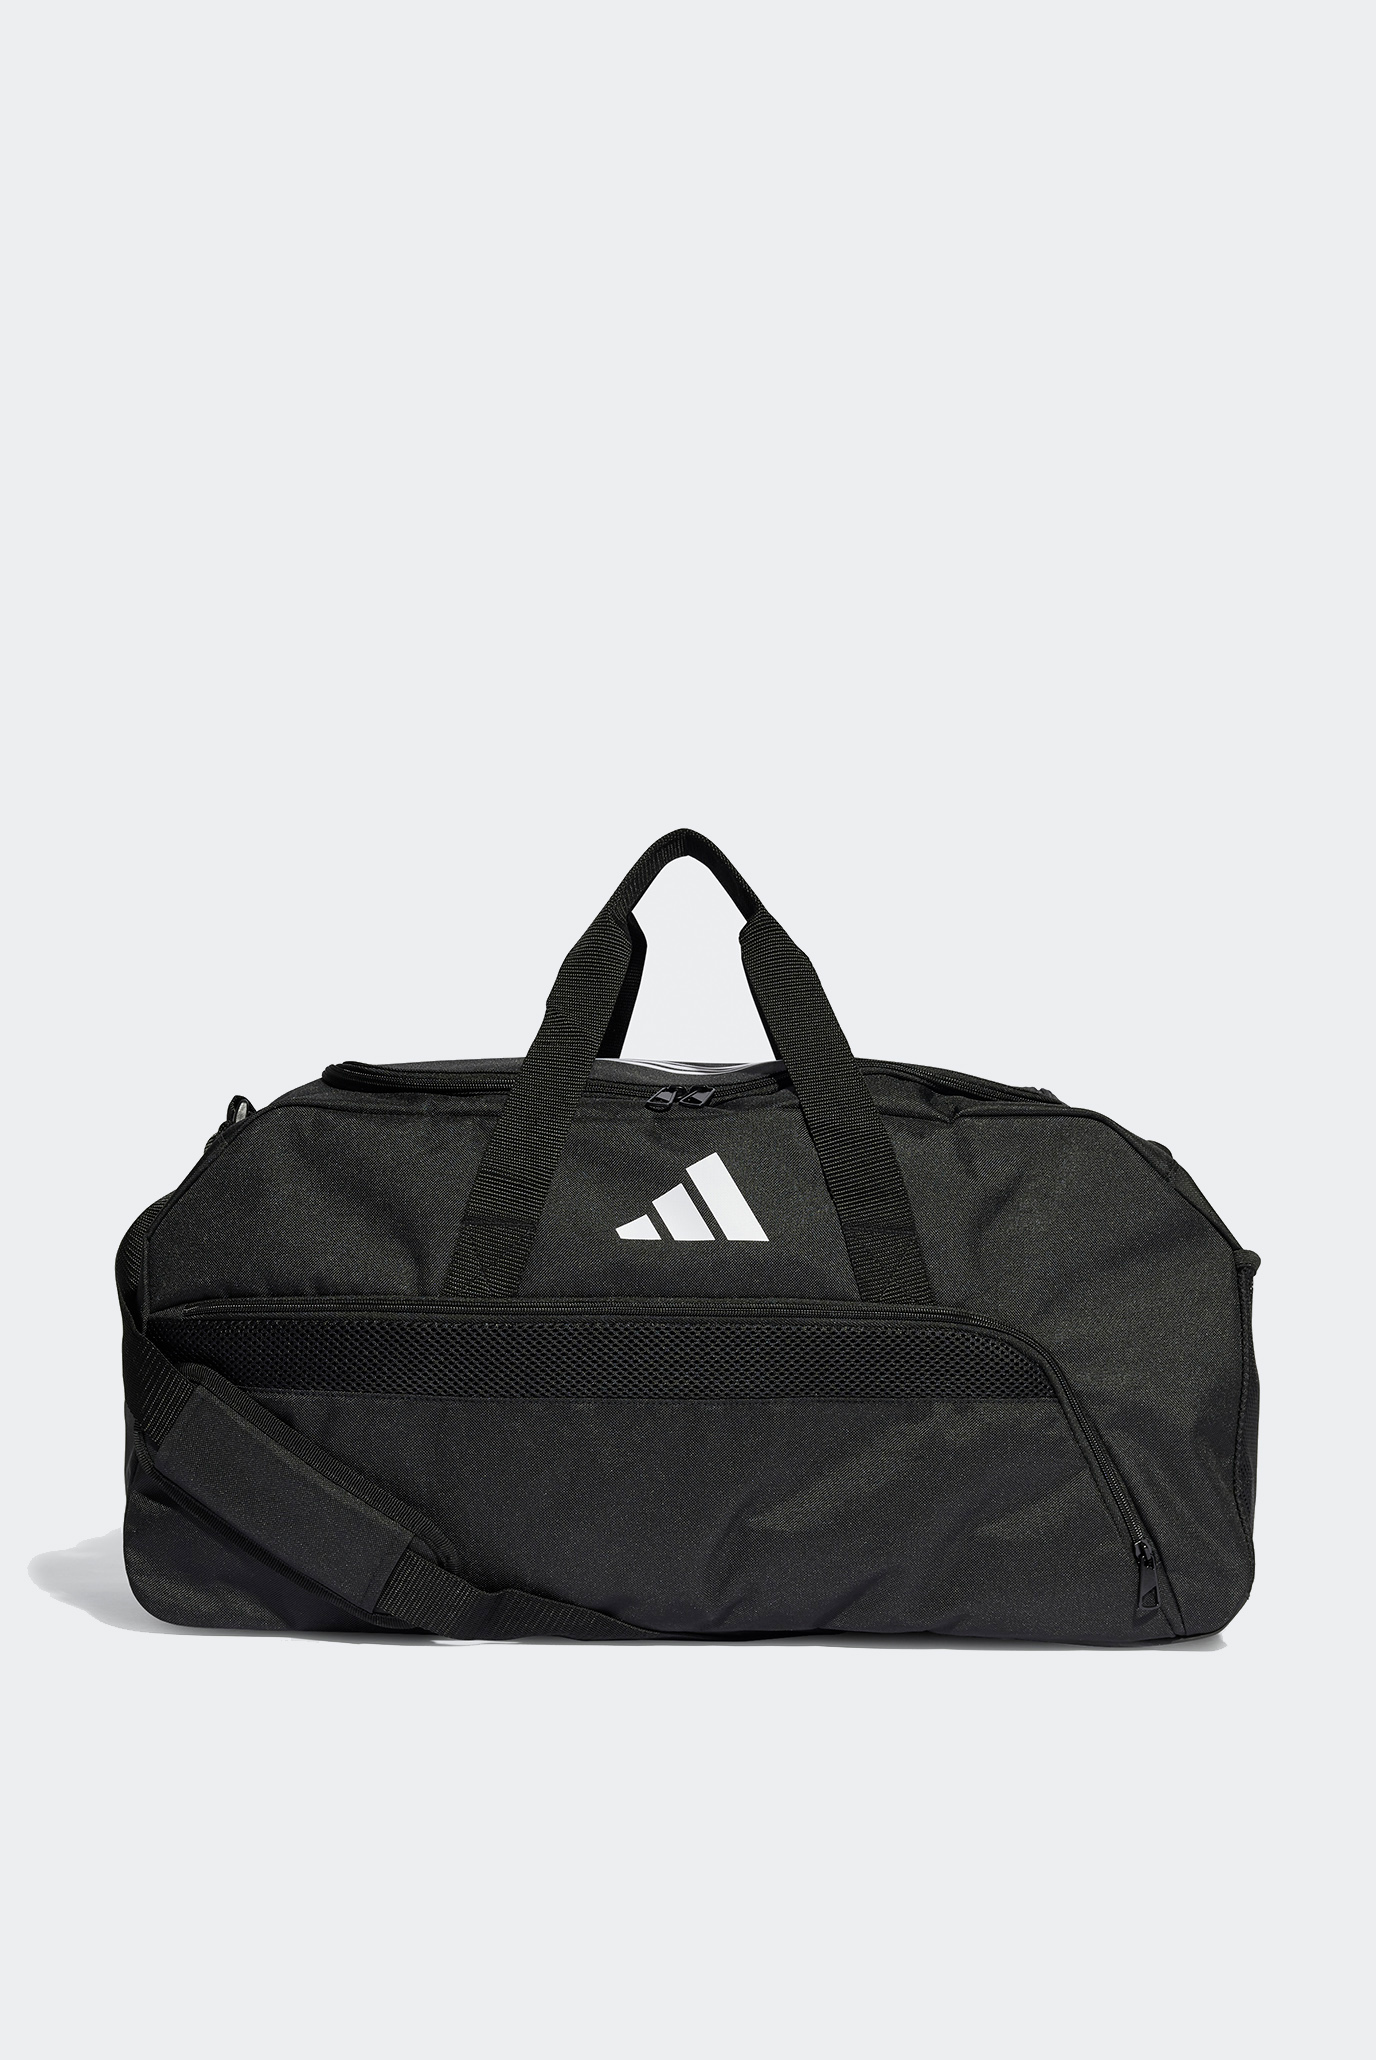 Чорна спортивна сумка Tiro League Duffel Bag Medium 1